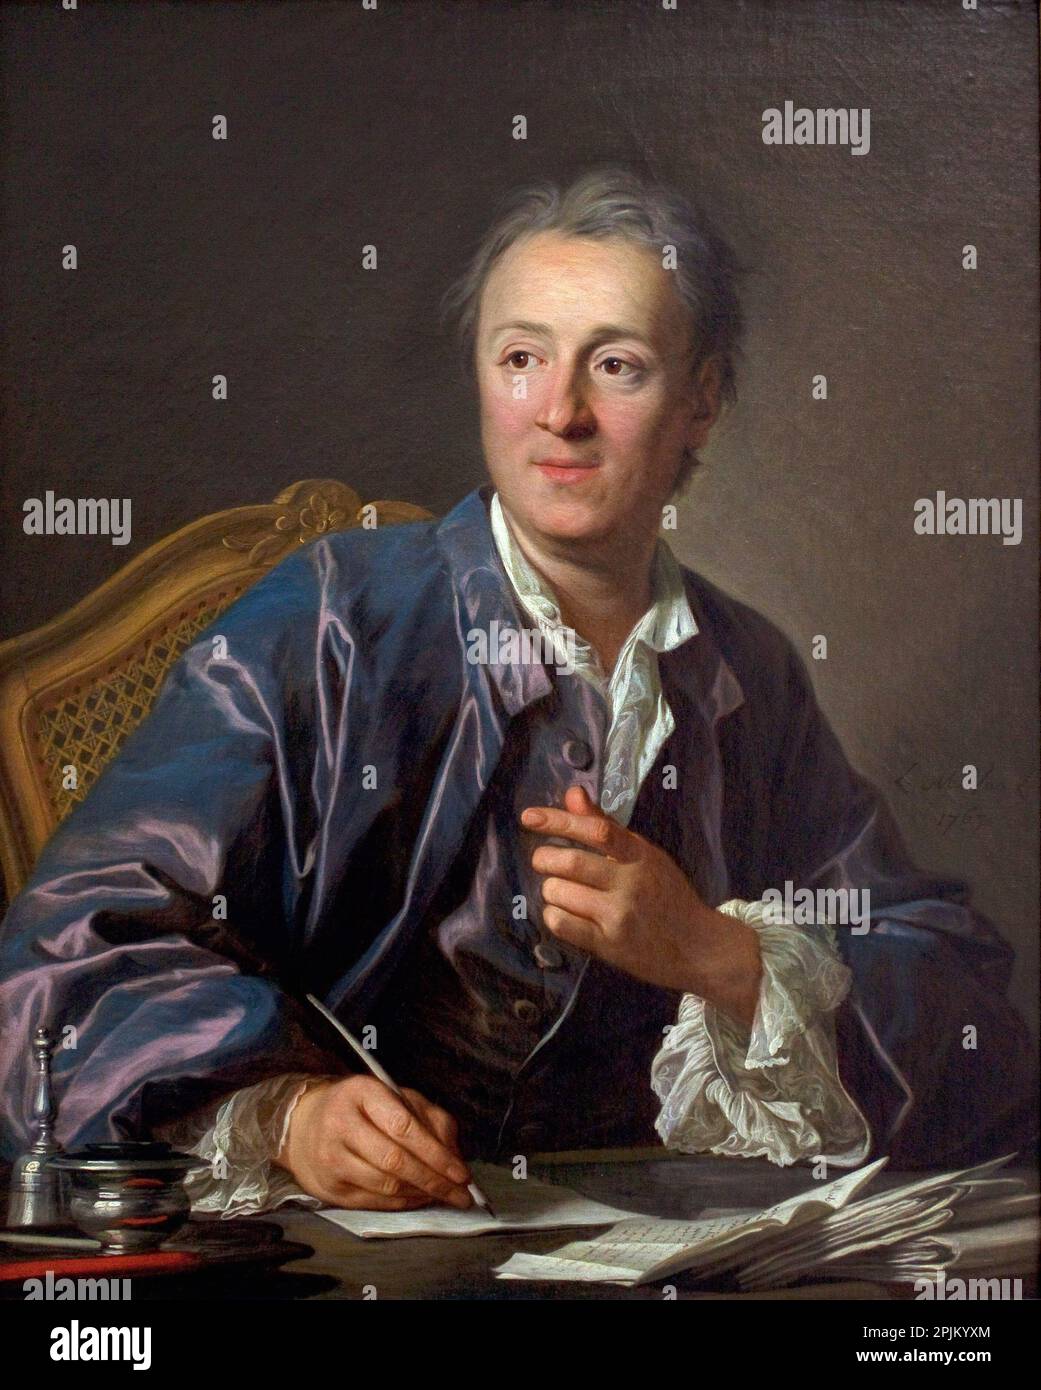 Denis Diderot, écrivain - Portrait de Denis Diderot (1713-1784), ecrivain, philosophe, encyclopediste francais, peinture de Louis Michel Van Loo (1707-1771) Huile sur toile, 1767  Musee du Louvre Stock Photo